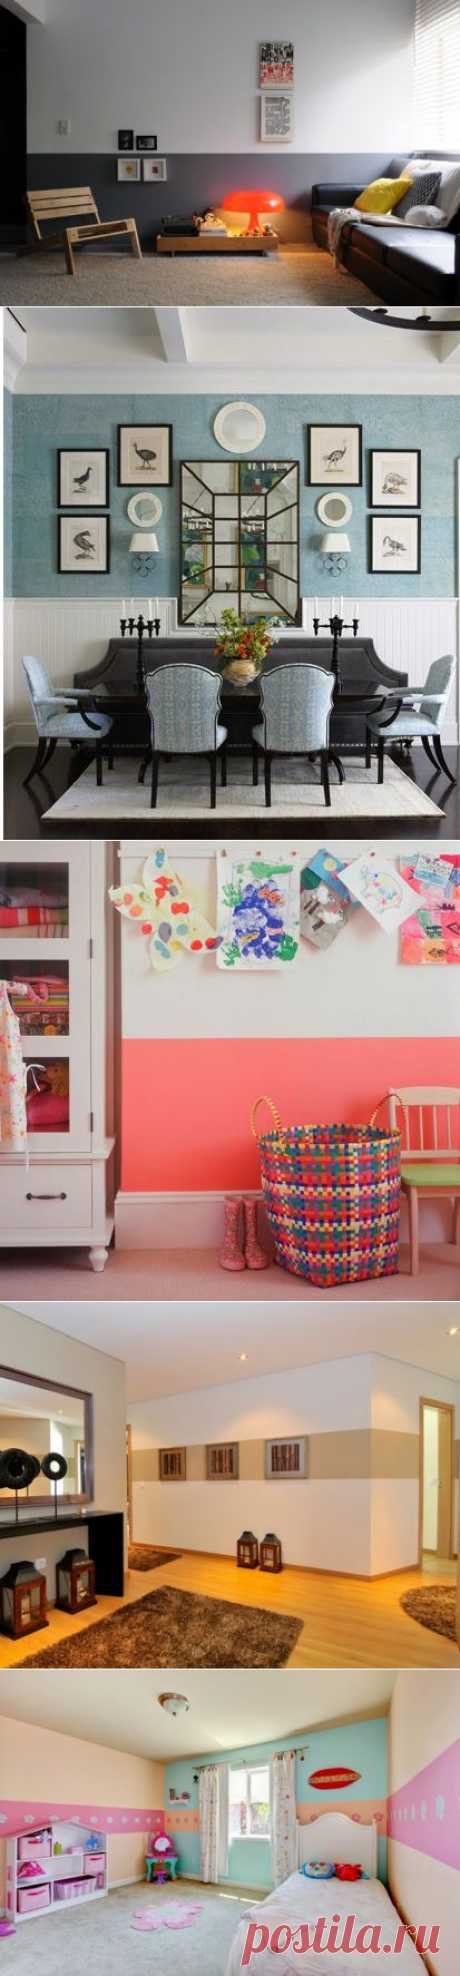 Покраска стен в два цвета - 50 фото идей - Мой дом